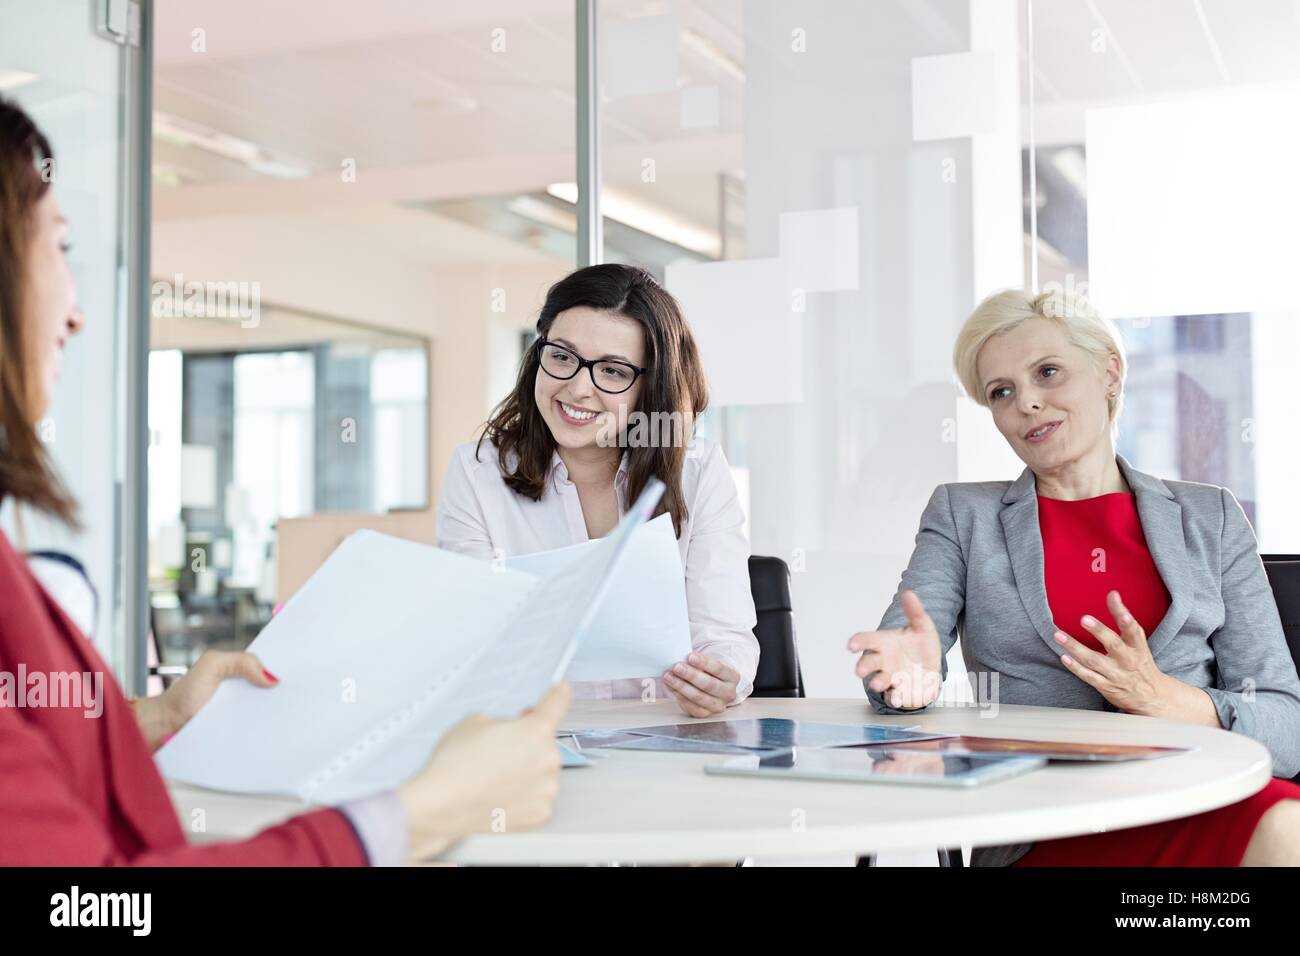 Femme mature en train de discuter avec des collègues de sexe féminin à table in office Banque D'Images